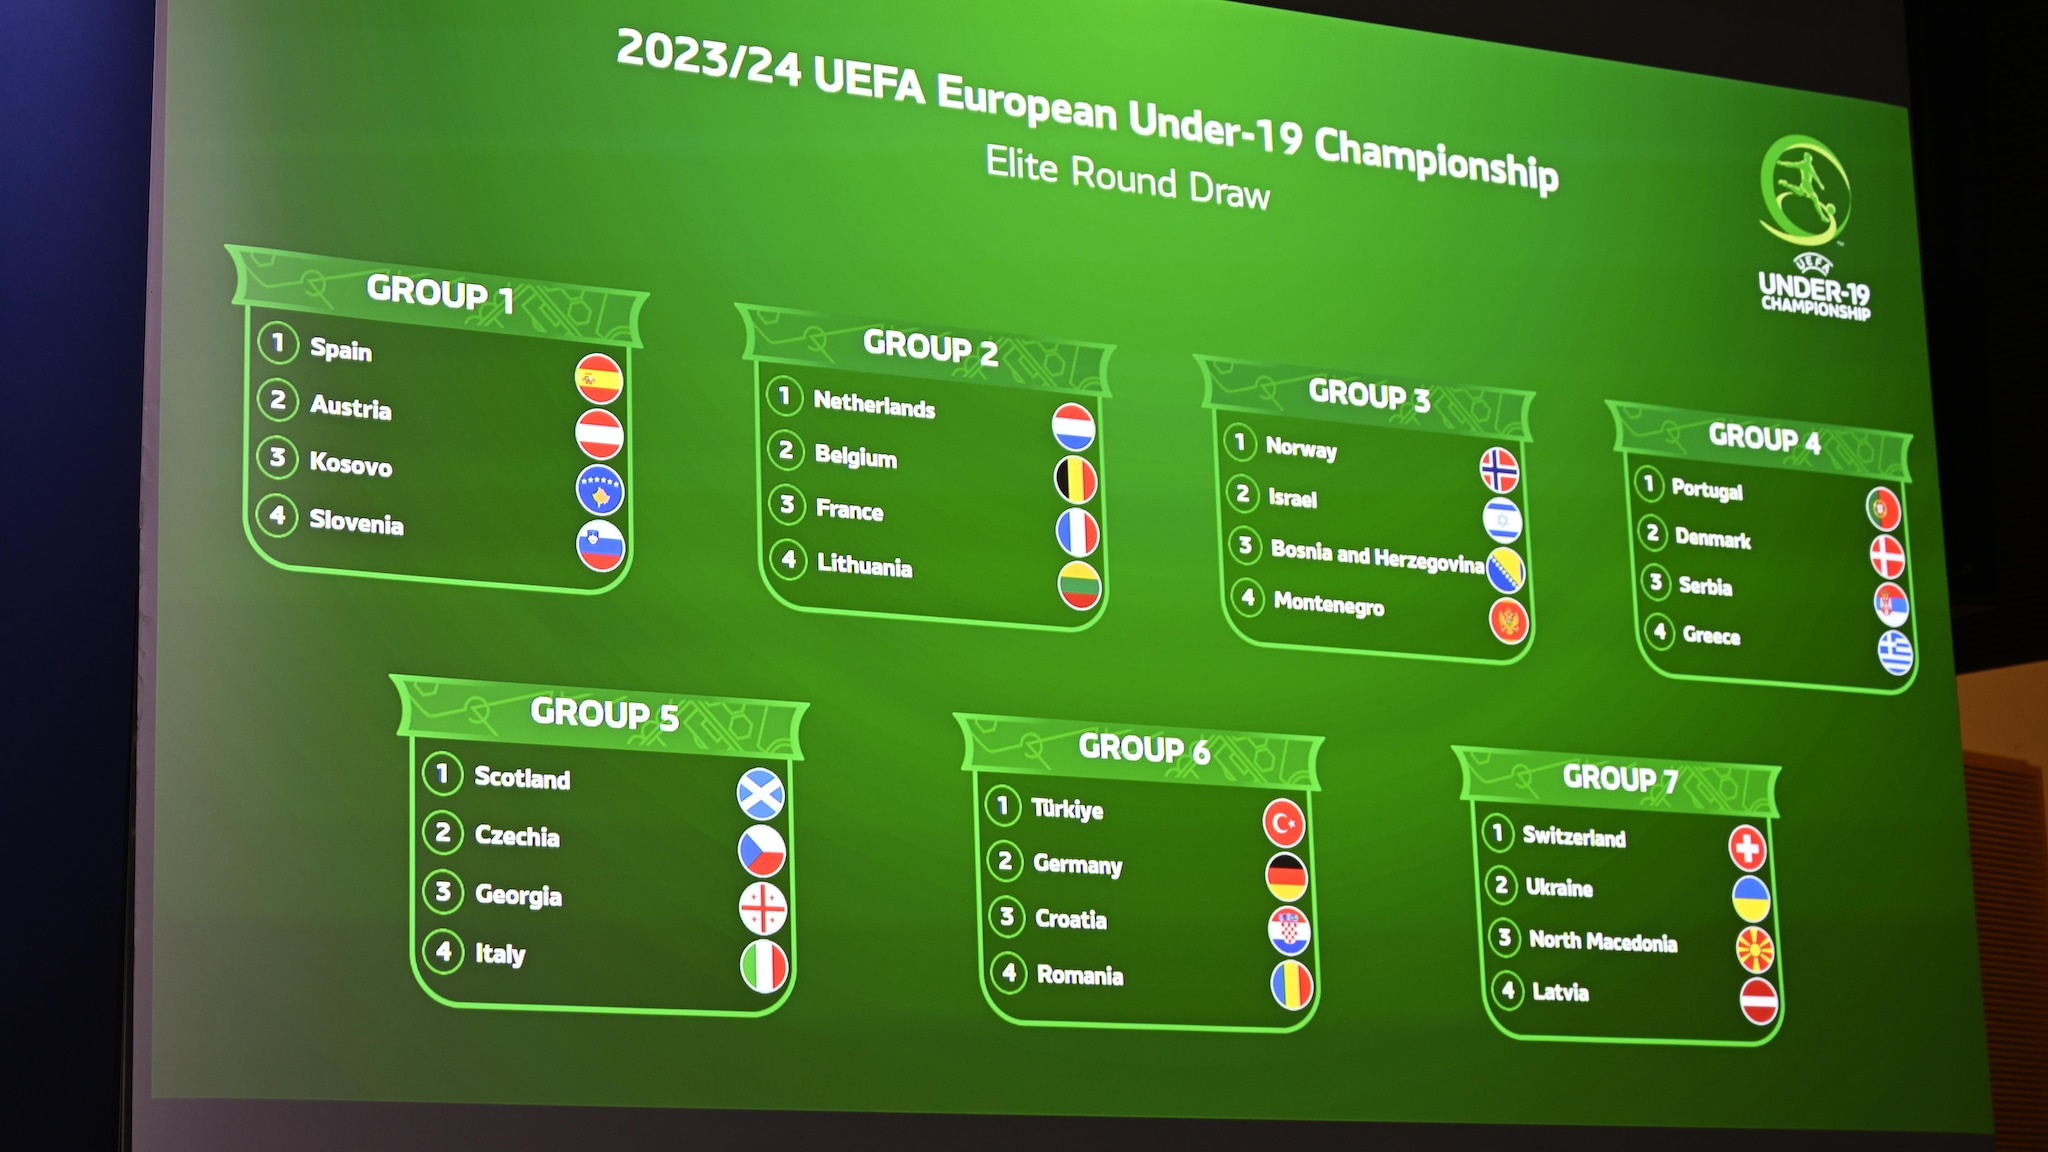 Sorteio da ronda de elite do EURO Sub-19 de 2023/24 realizado, Sub-19